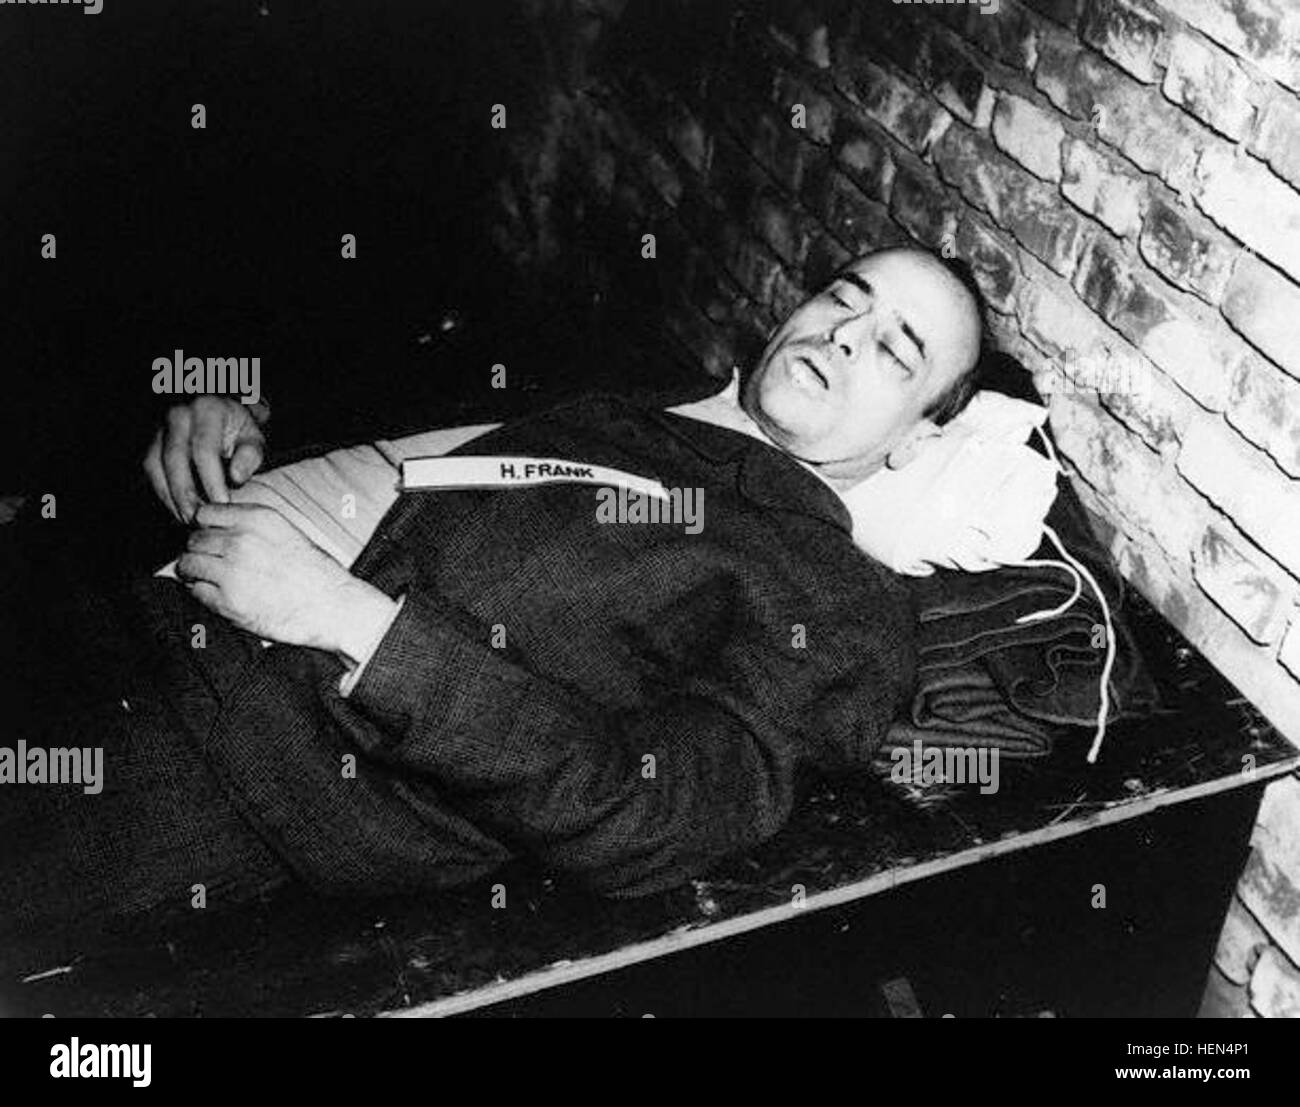 Oktober 1946 in Nürnberg---die Leiche von Nazi-Kriegsverbrecher Hans Frank nach seiner Hinrichtung durch den Strang. Frank, der Gouverneur von Polen nach der Invasion im Jahr 1939 wurde wegen Kriegsverbrechen und Verbrechen gegen die Menschlichkeit in den Nürnberger Prozessen beurteilt. Oktober 1946. ---Bild vom Toten Hansfrank © CORBIS Stockfoto